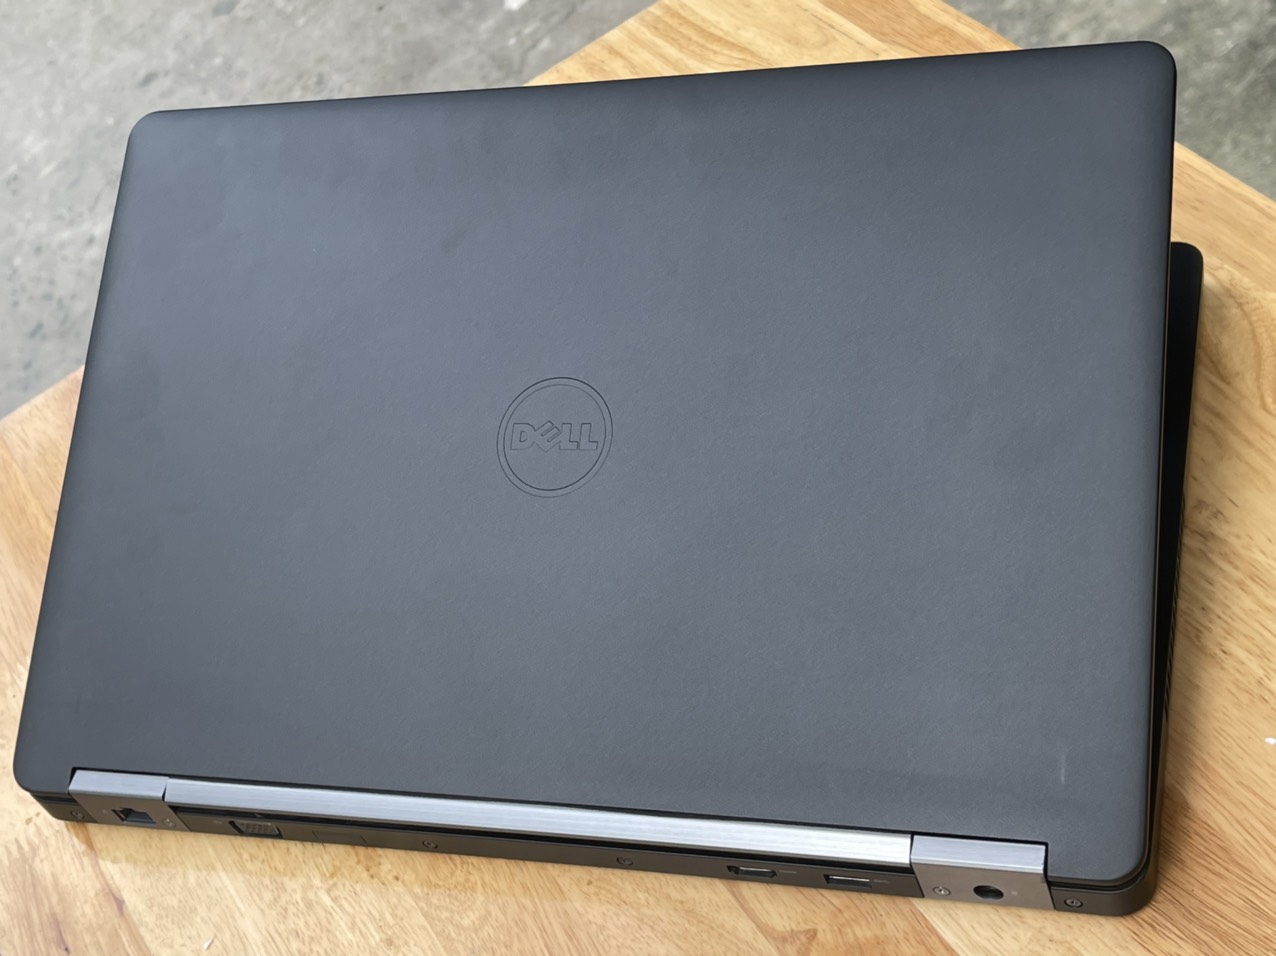 Laptop Dell E5570 i3 6100U ram 4gb ssd 128gb 15.6 inch xách tay nguyên zin giá rẻ